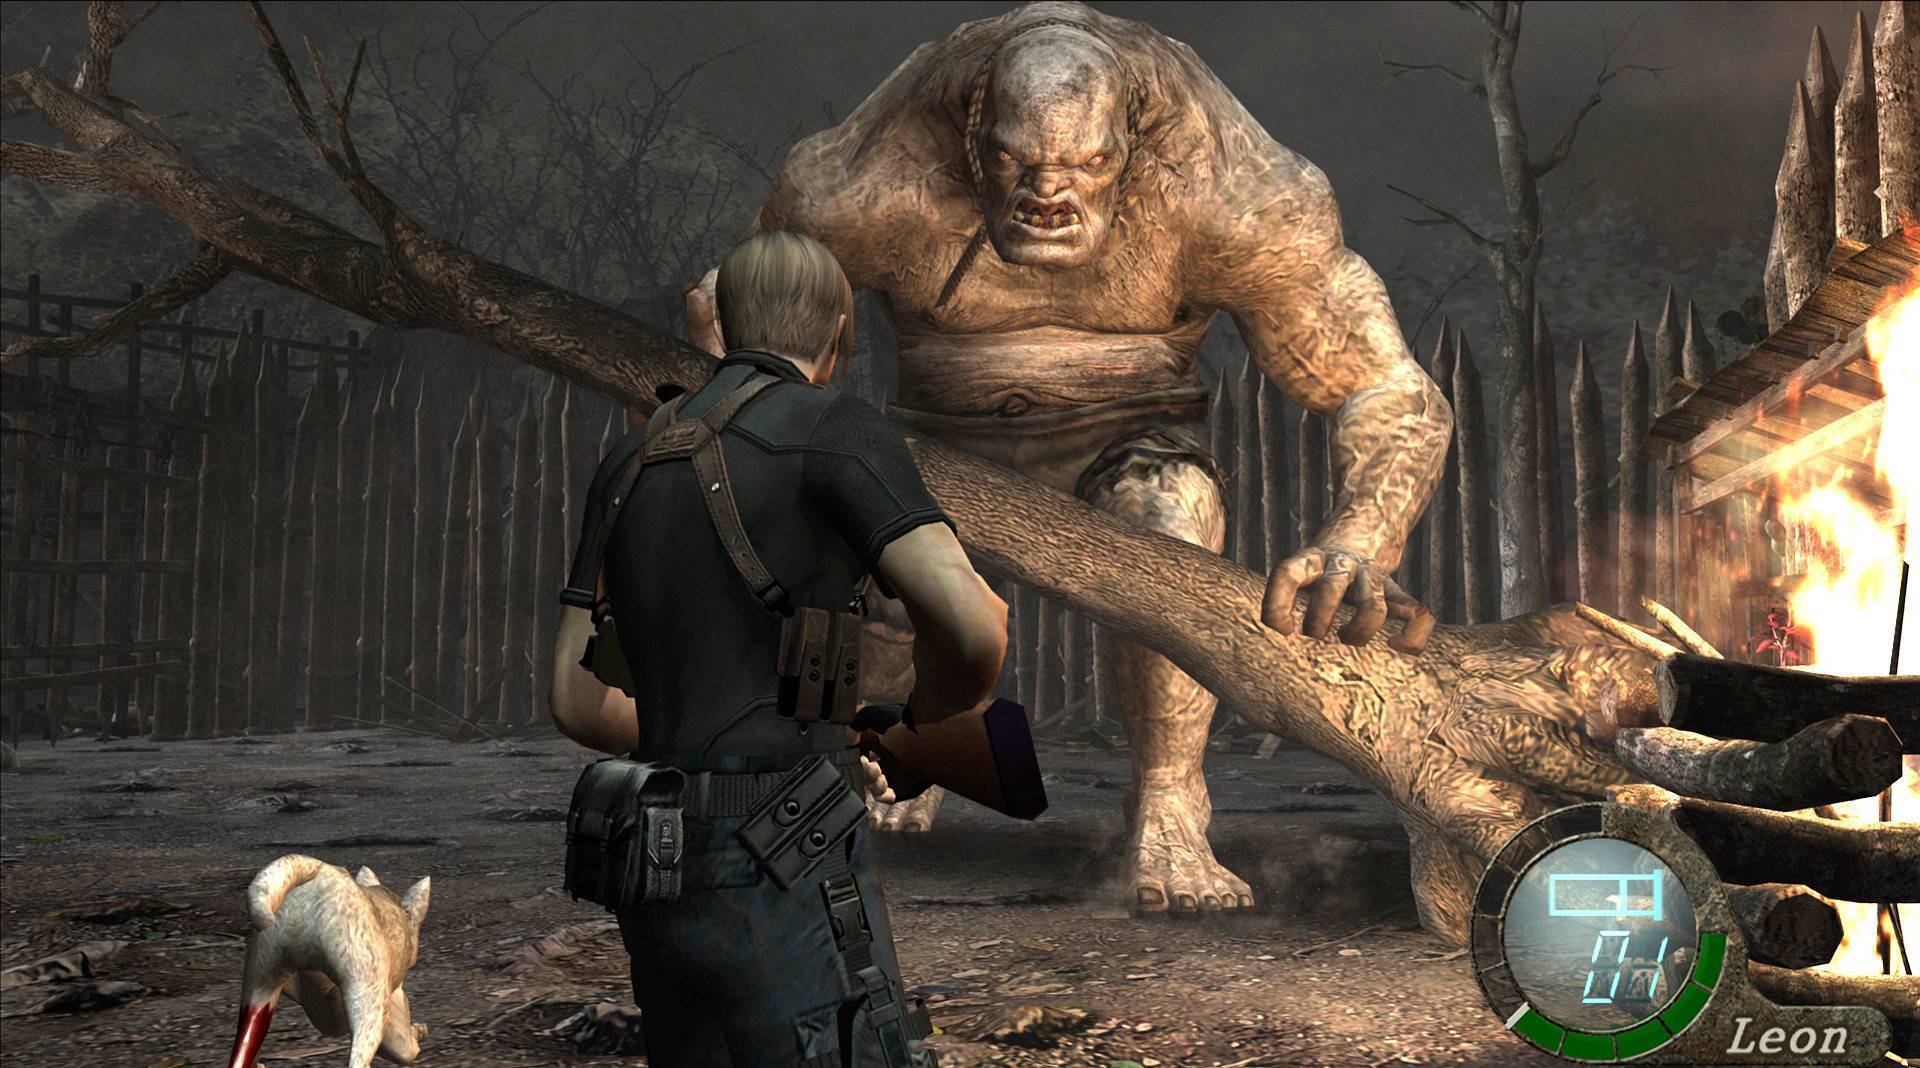 Resident Evil 4 - PS4 Games